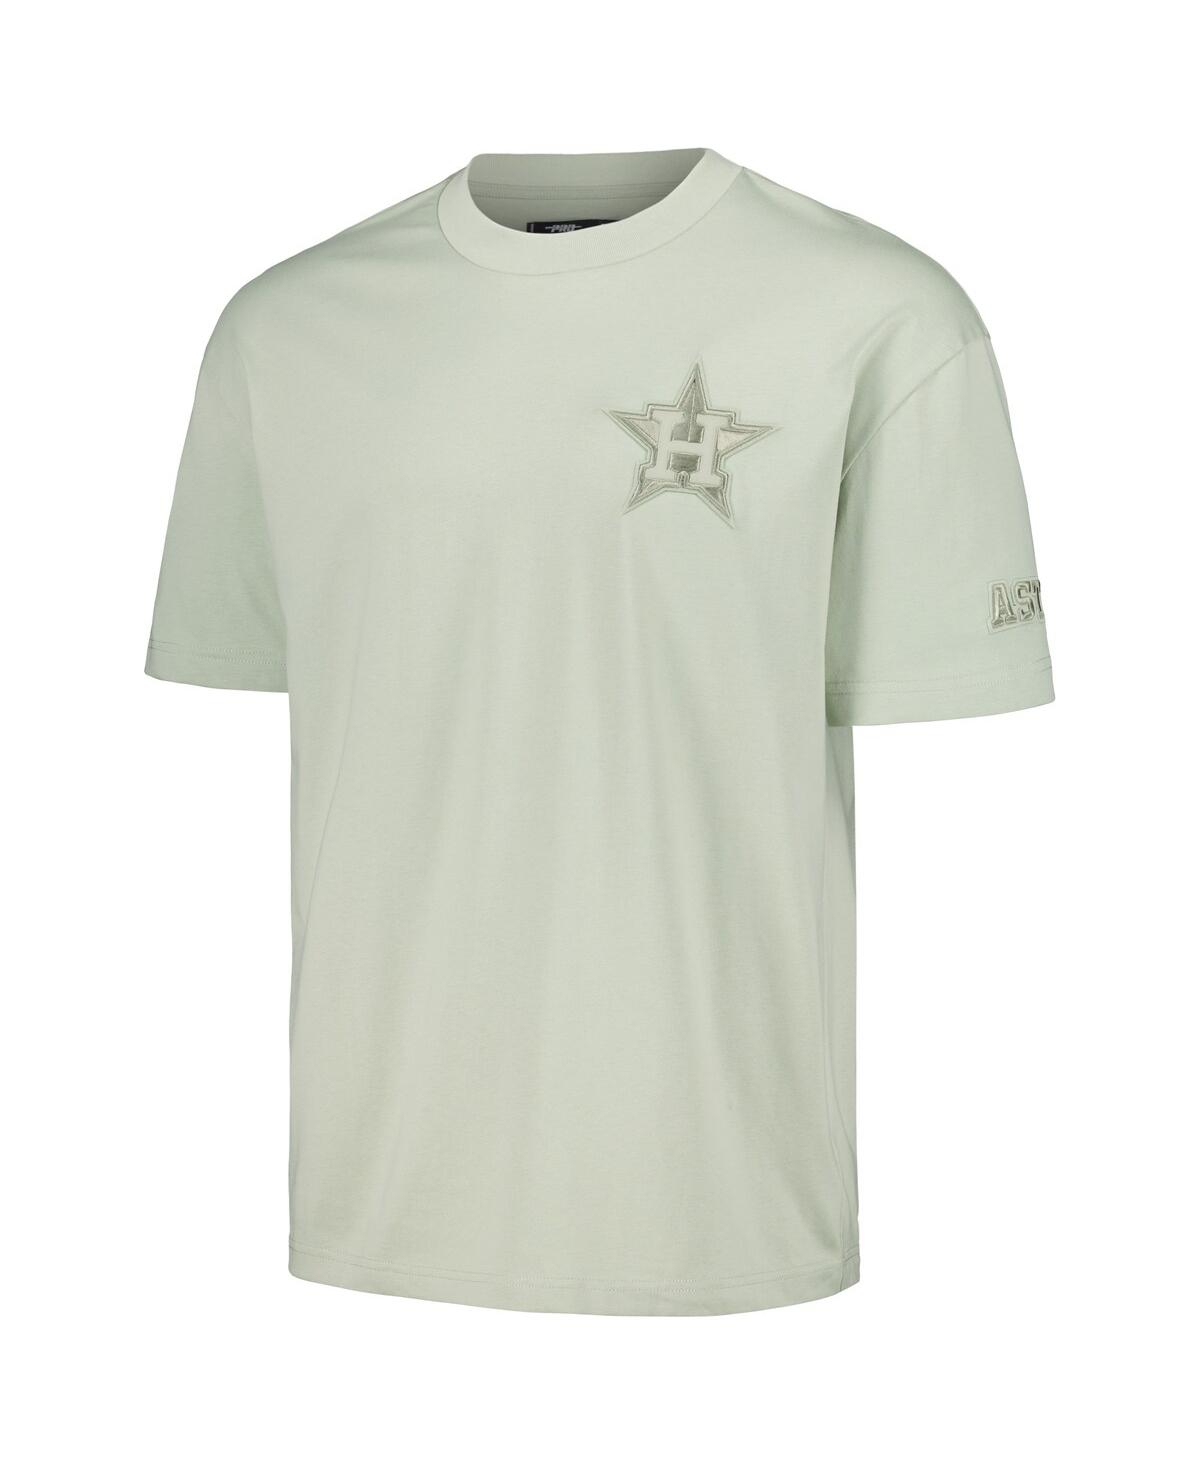 Shop Pro Standard Men's Mint Houston Astros Neutral Cj Dropped Shoulders T-shirt